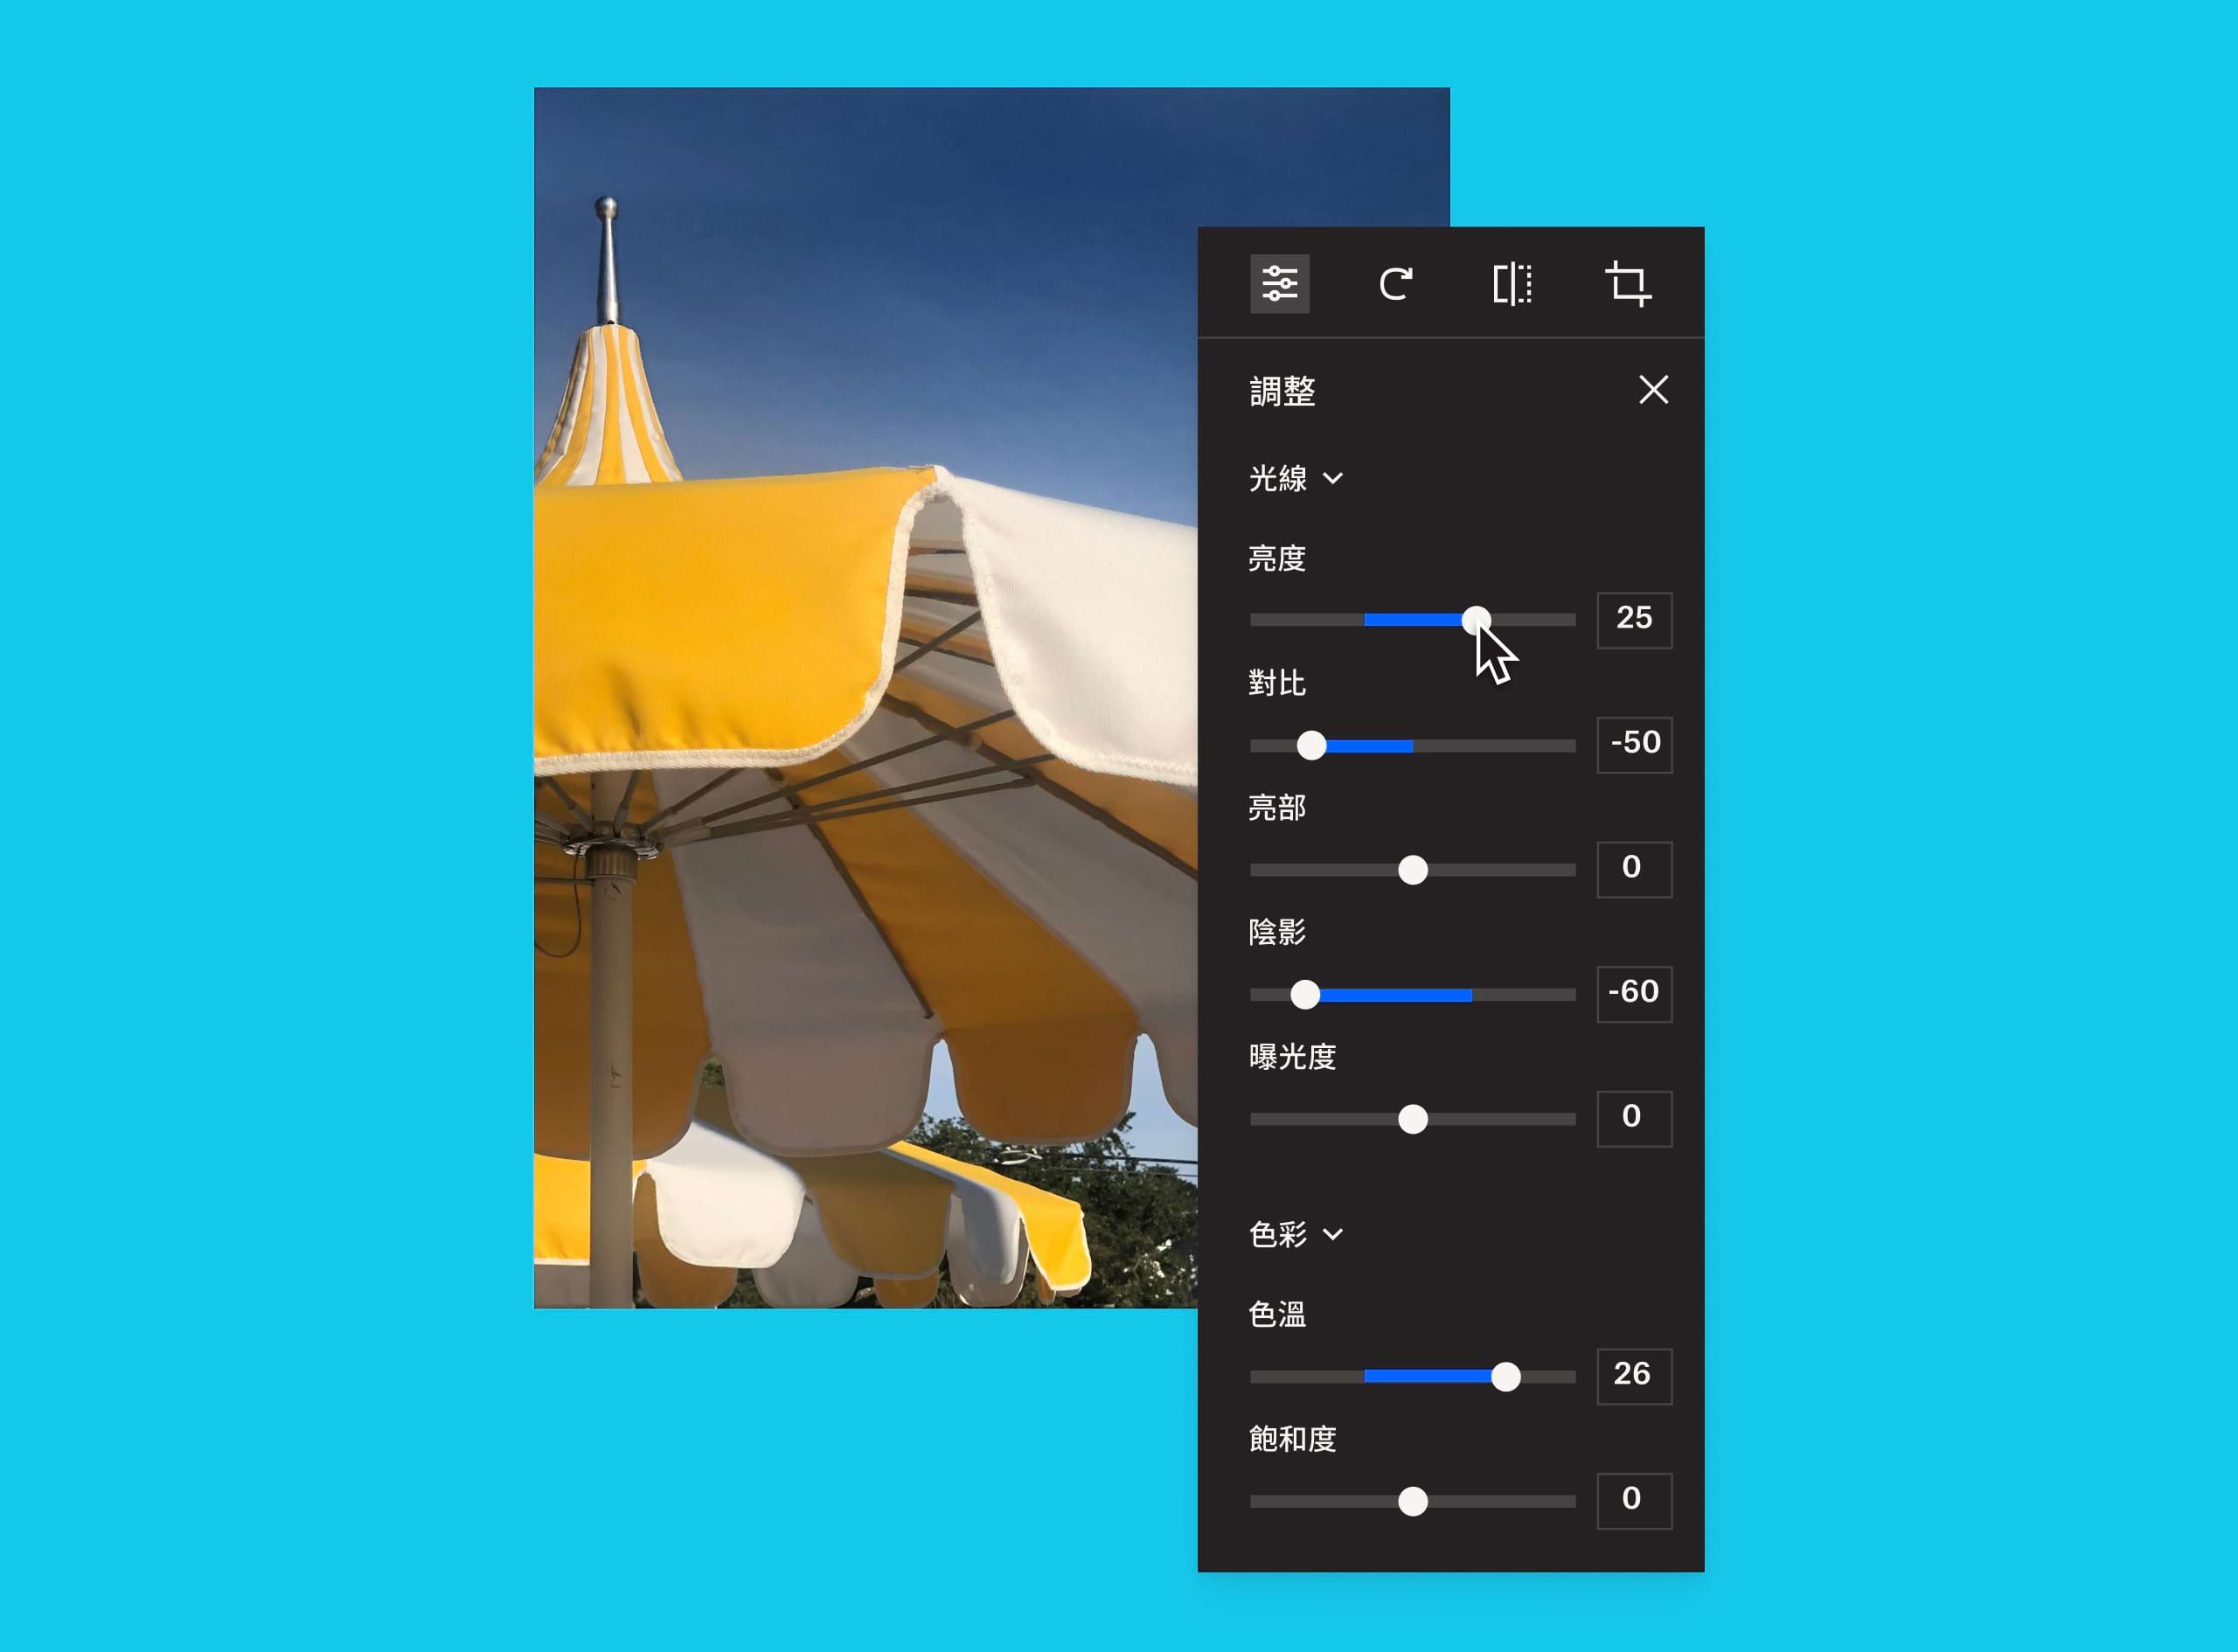 一張黃白雨傘的影像，影像與影像調整框重疊，而使用者正在調整影像的亮度